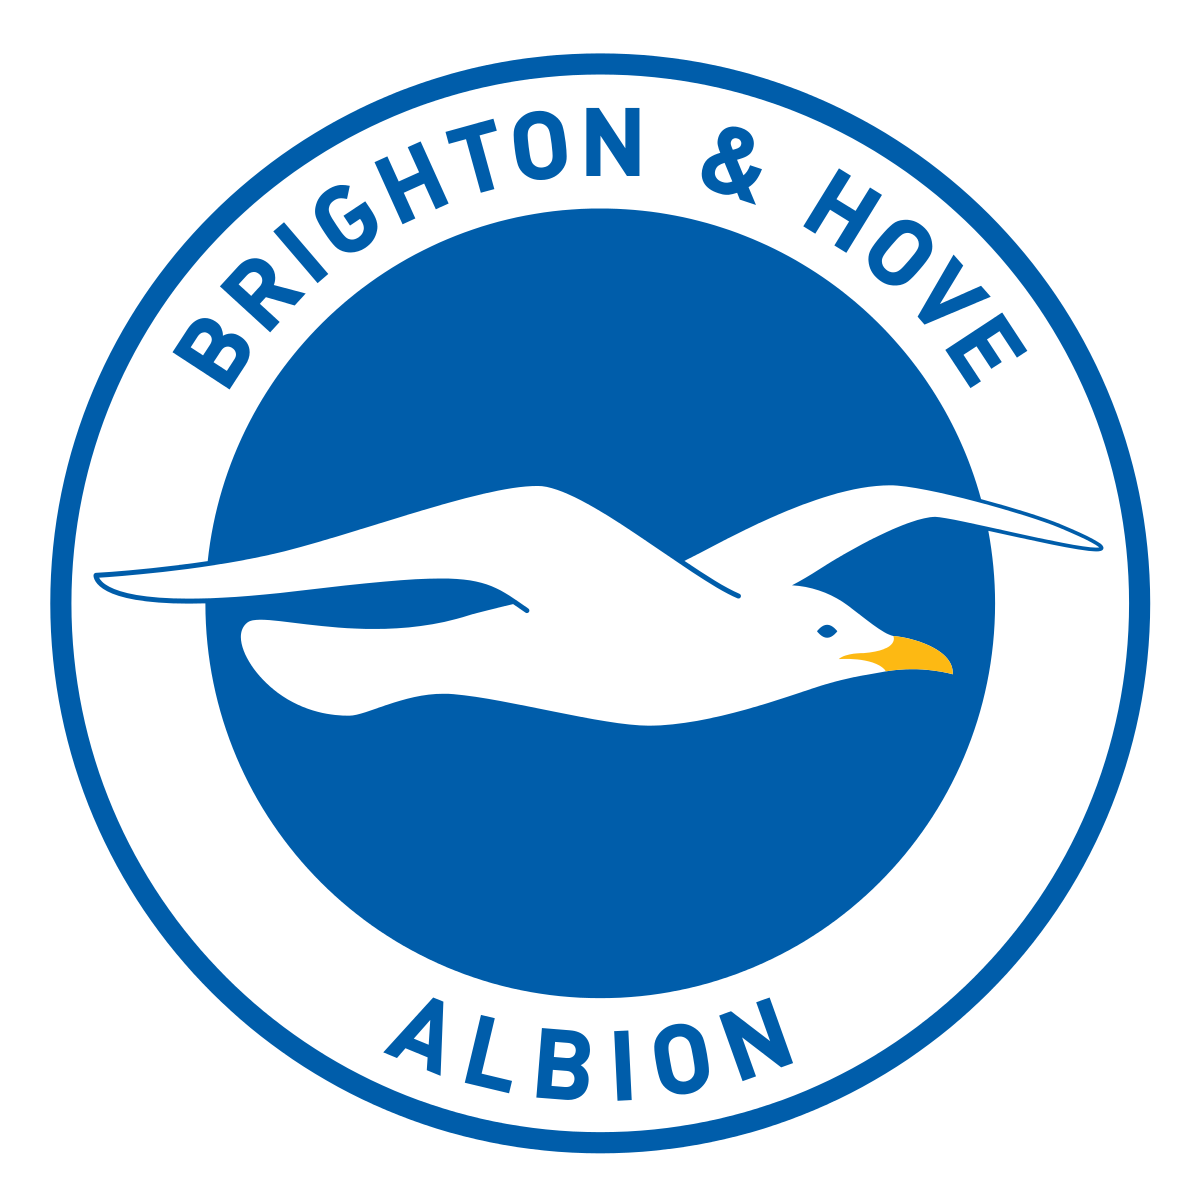 Brighton & Hove Albion FC Brand Logo